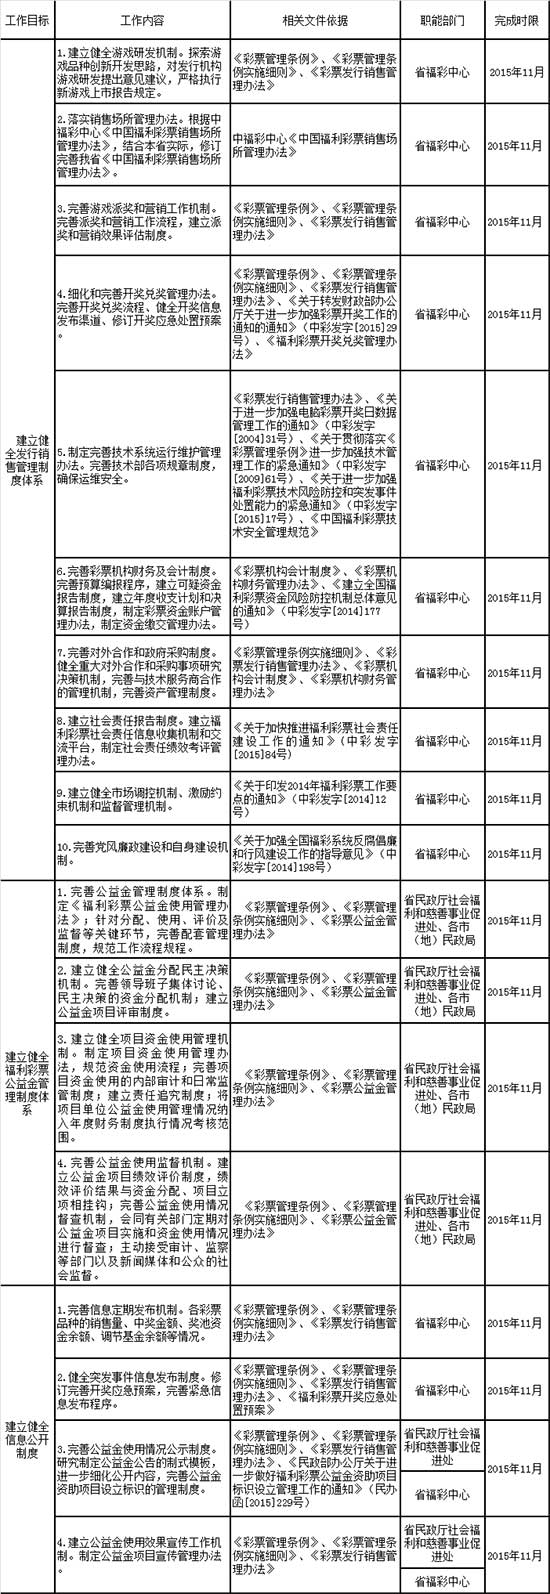 黑龙江省建设“阳光福彩”专项行动工作分工